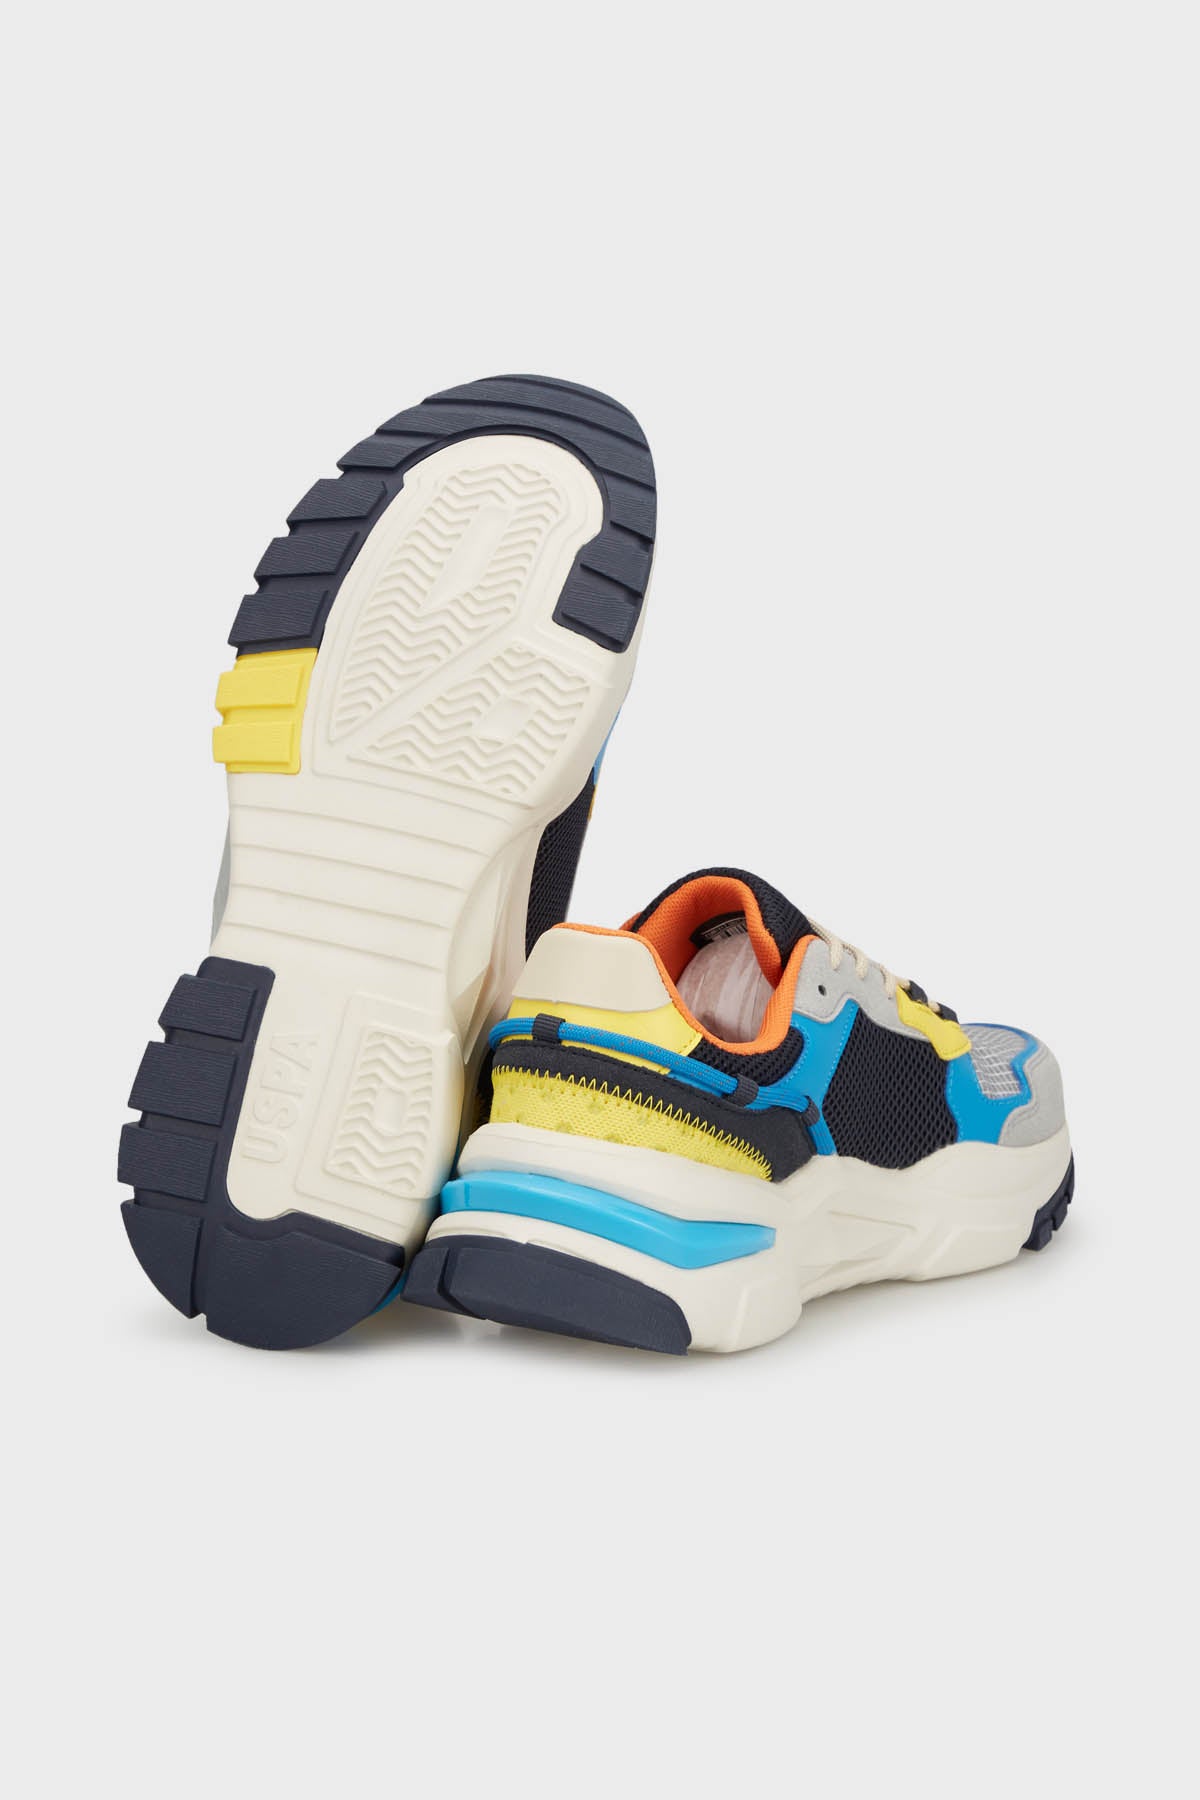 U.S. Polo Sneaker Erkek Ayakkabı VINCENT 4FX Gri-Mavi-Sarı